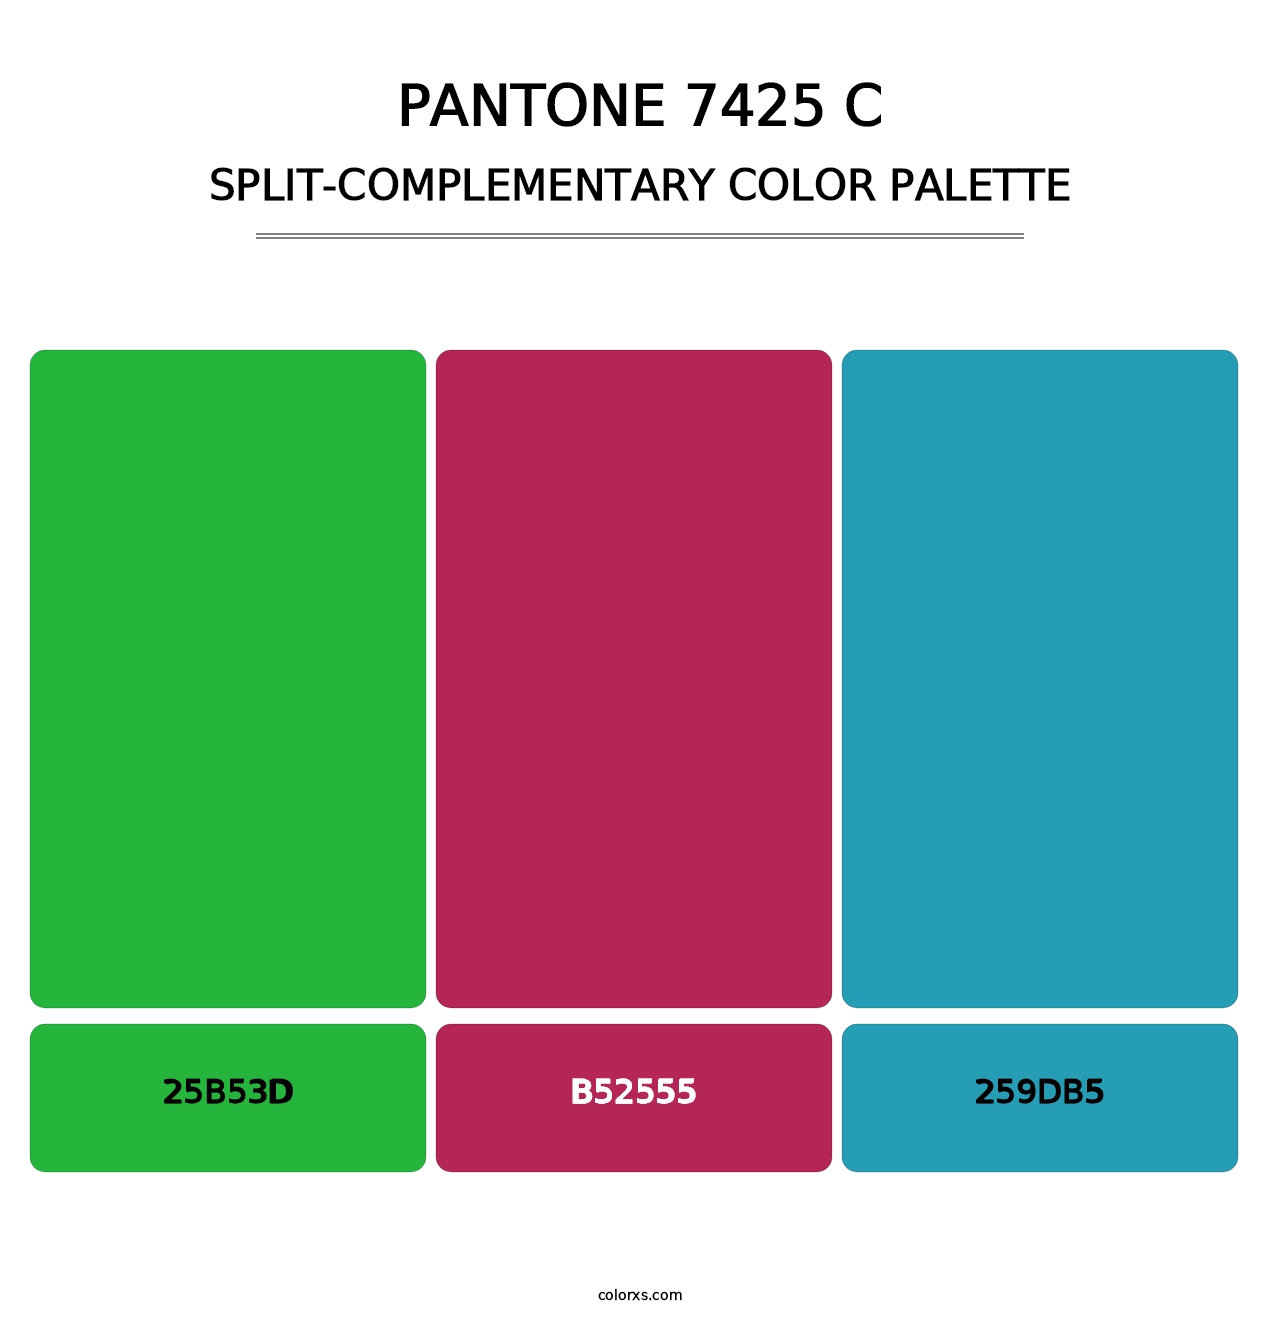 PANTONE 7425 C - Split-Complementary Color Palette